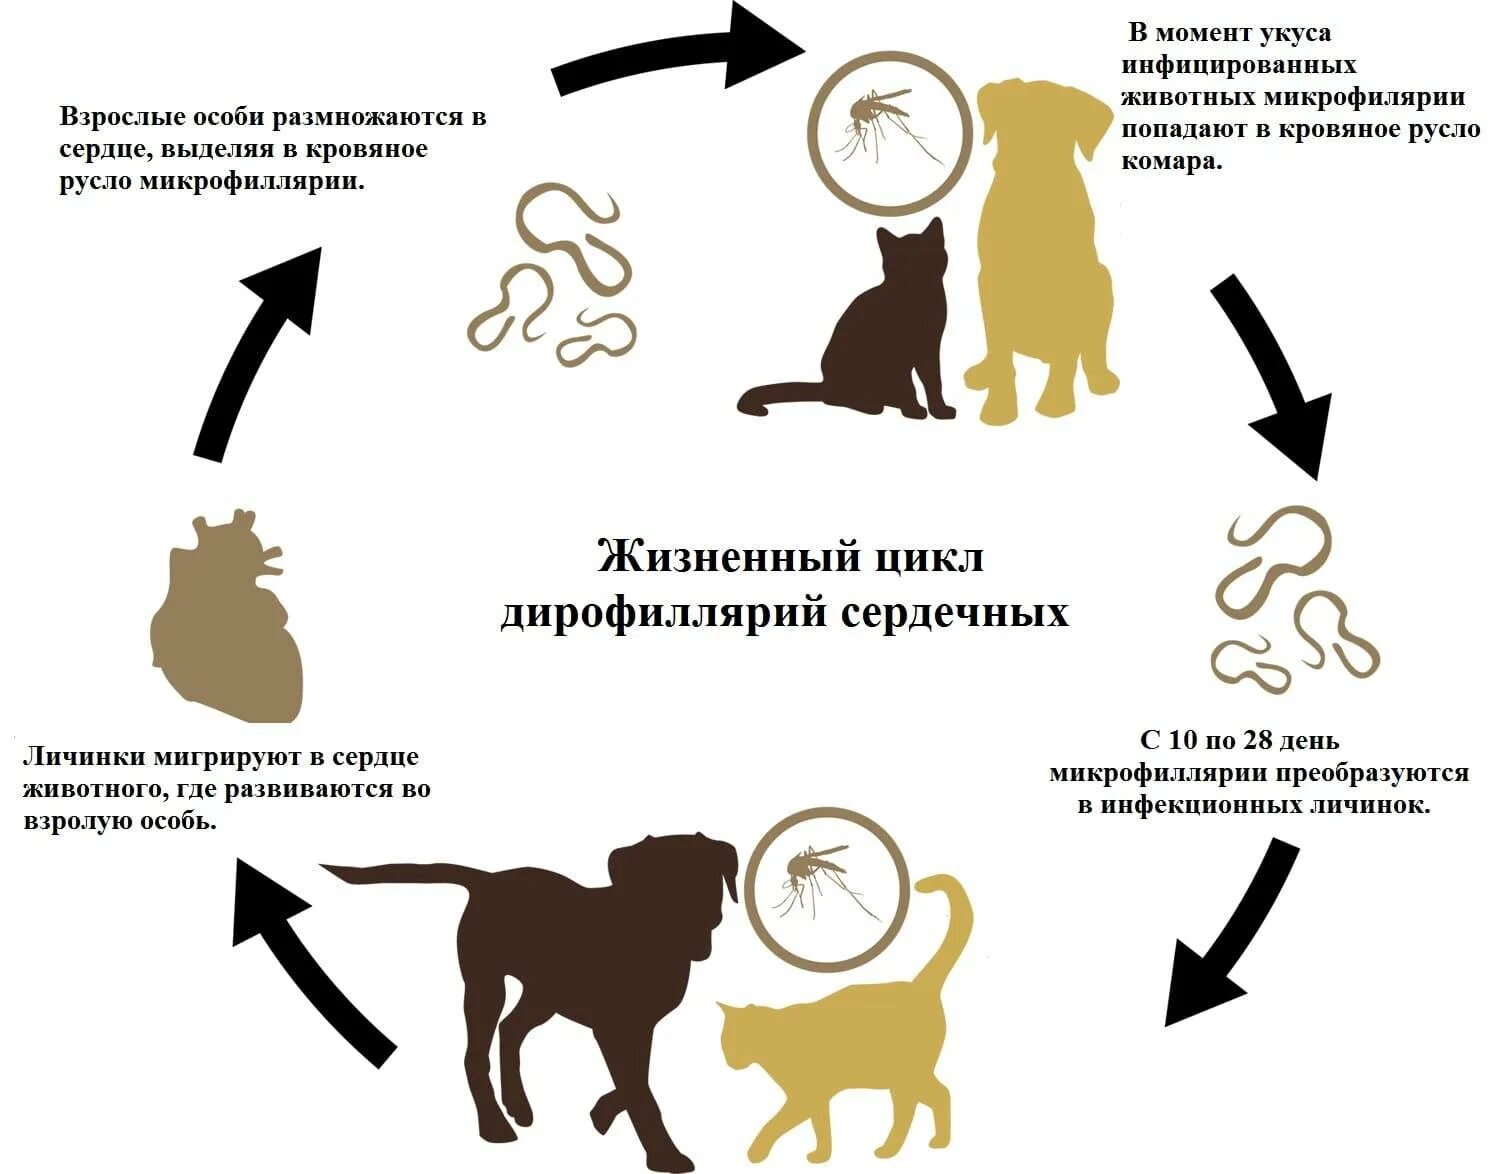 Какая болезнь передается от кошек. Жизненный цикл дирофилярии собак. Жизненный цикл дирофилярии схема. Дирофиляриоз собак жизненный цикл. Dirofilaria immitis жизненный цикл.